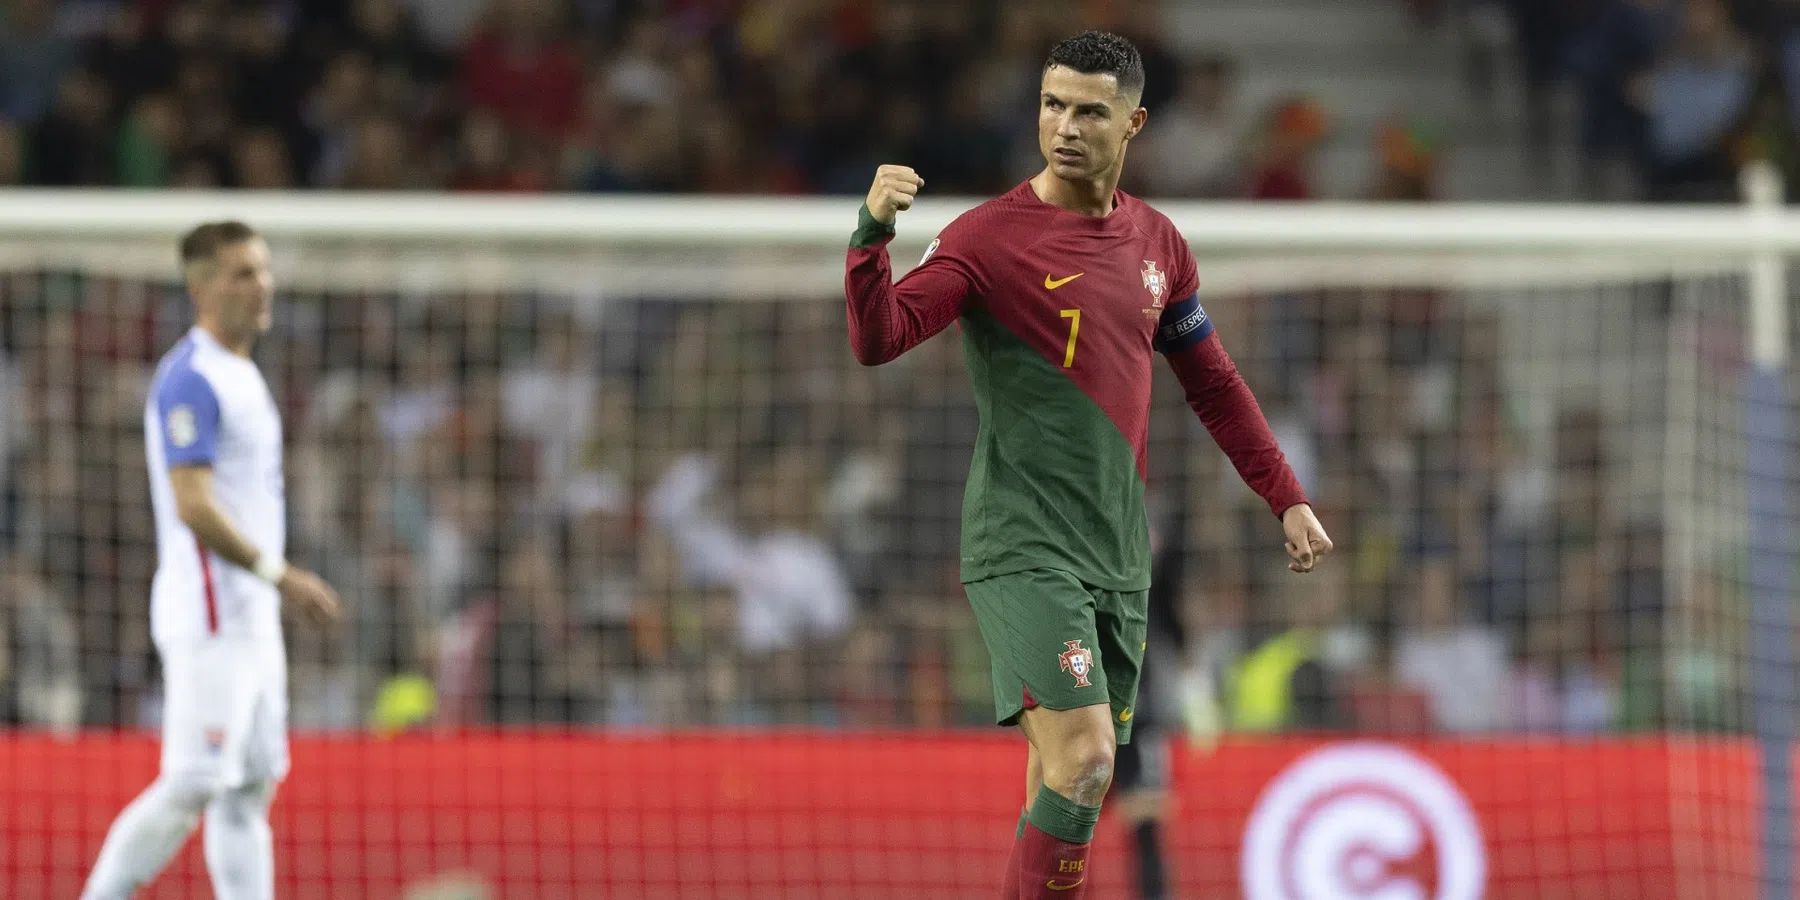 Ronaldo (38) wil blijven scoren en zet doelstelling: 'Ik denk dat ik dat ga halen'